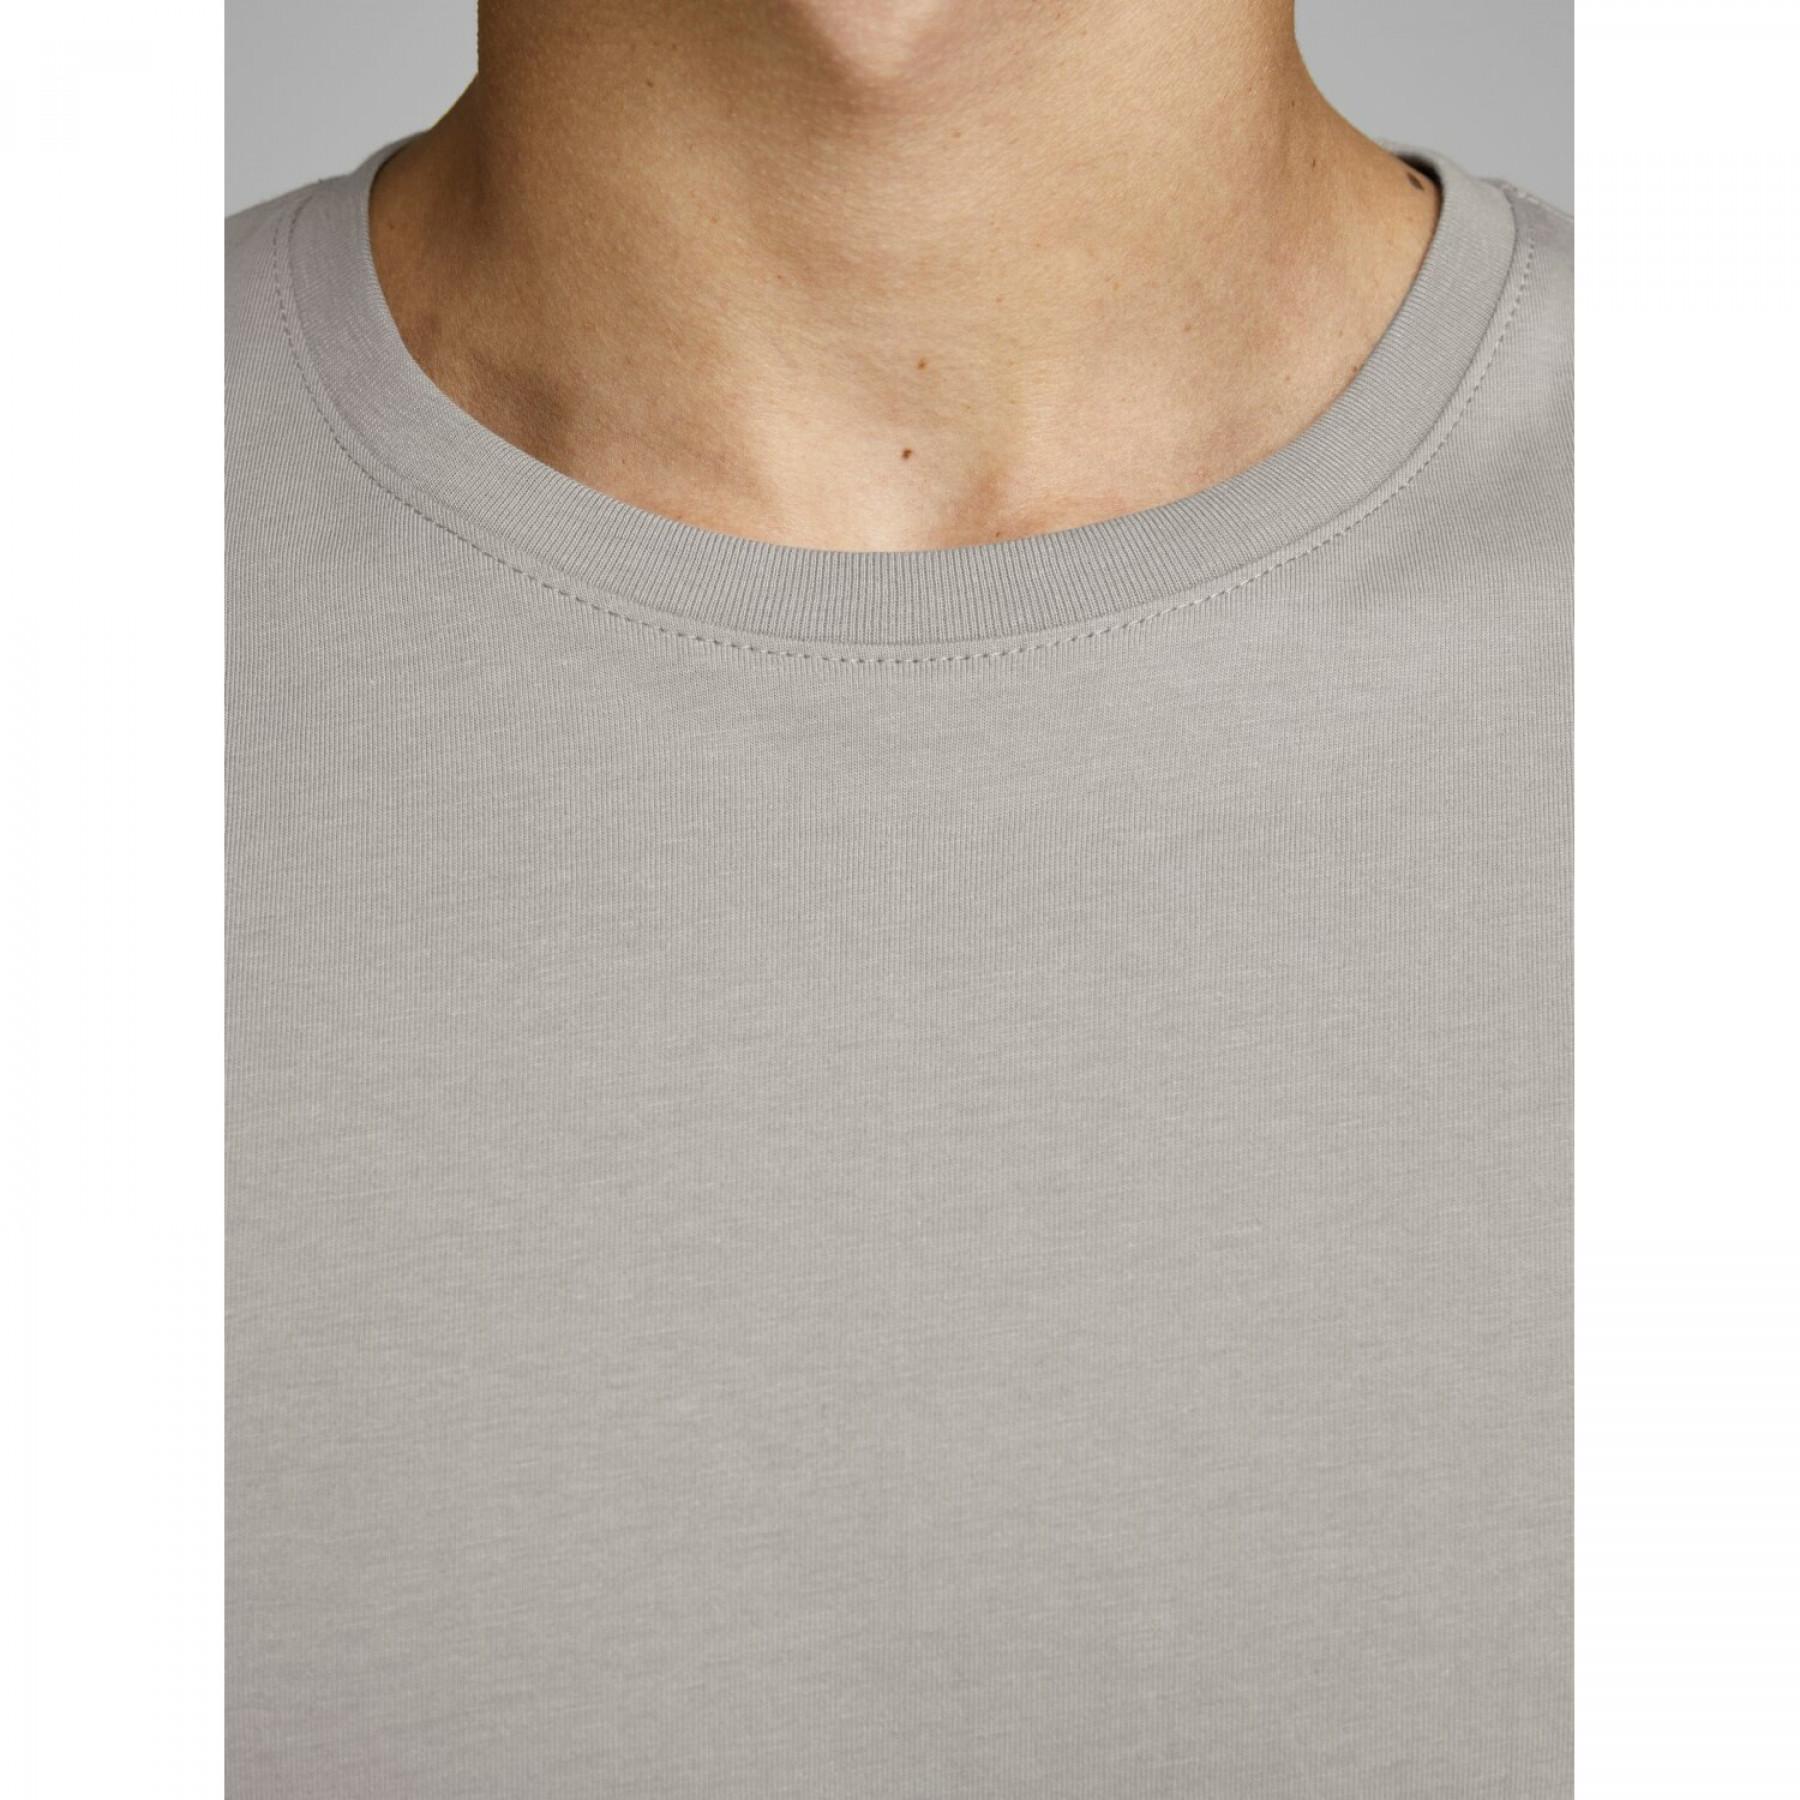 Camiseta Jack & Jones O-neck Organic basic